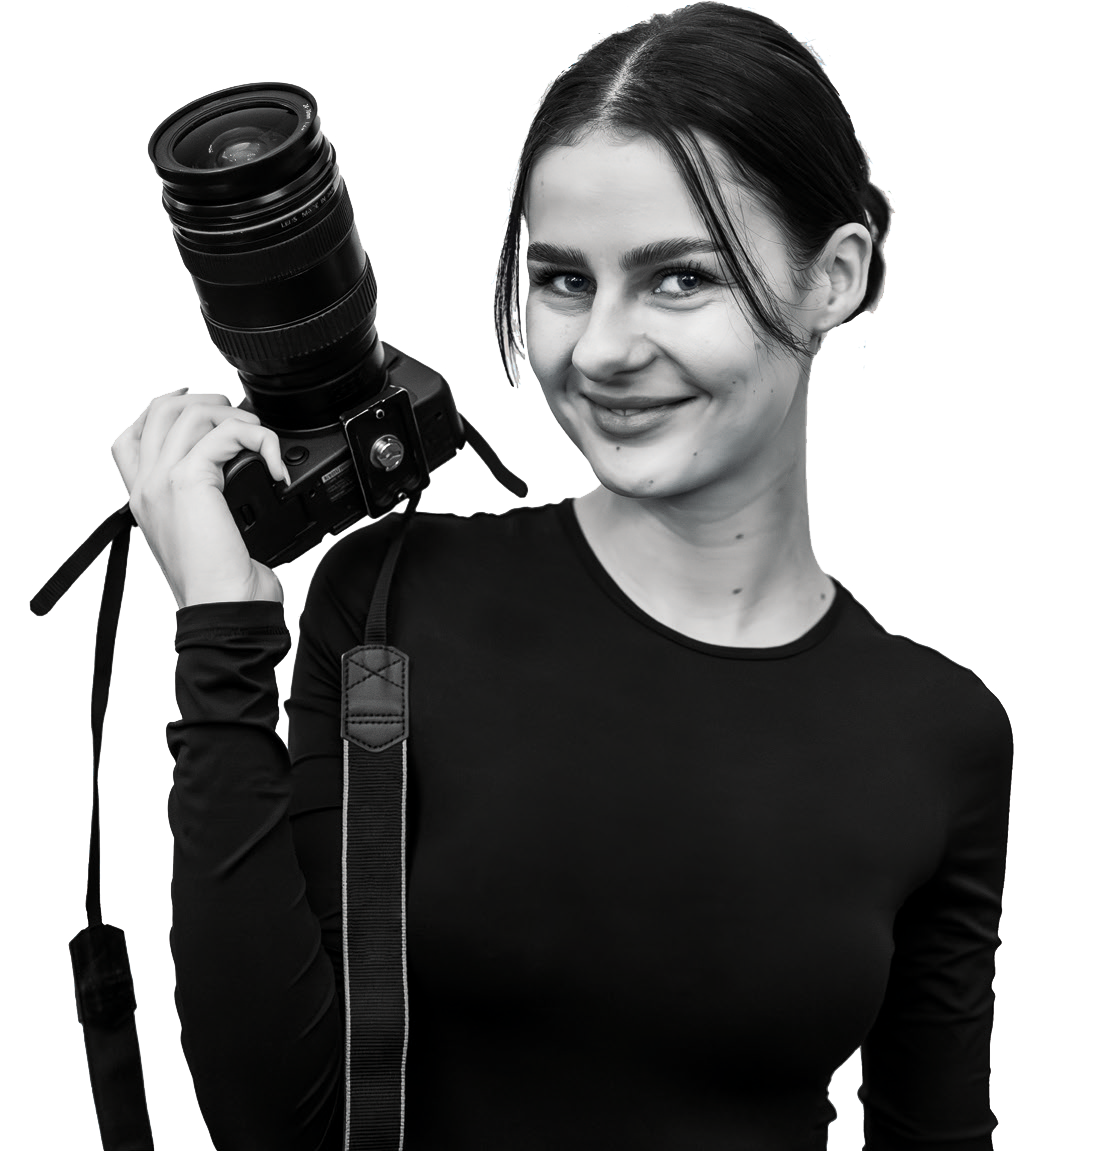 Elisabeth Geisler als schwarz/weiß Porträt mit einer Kamera in der Hand